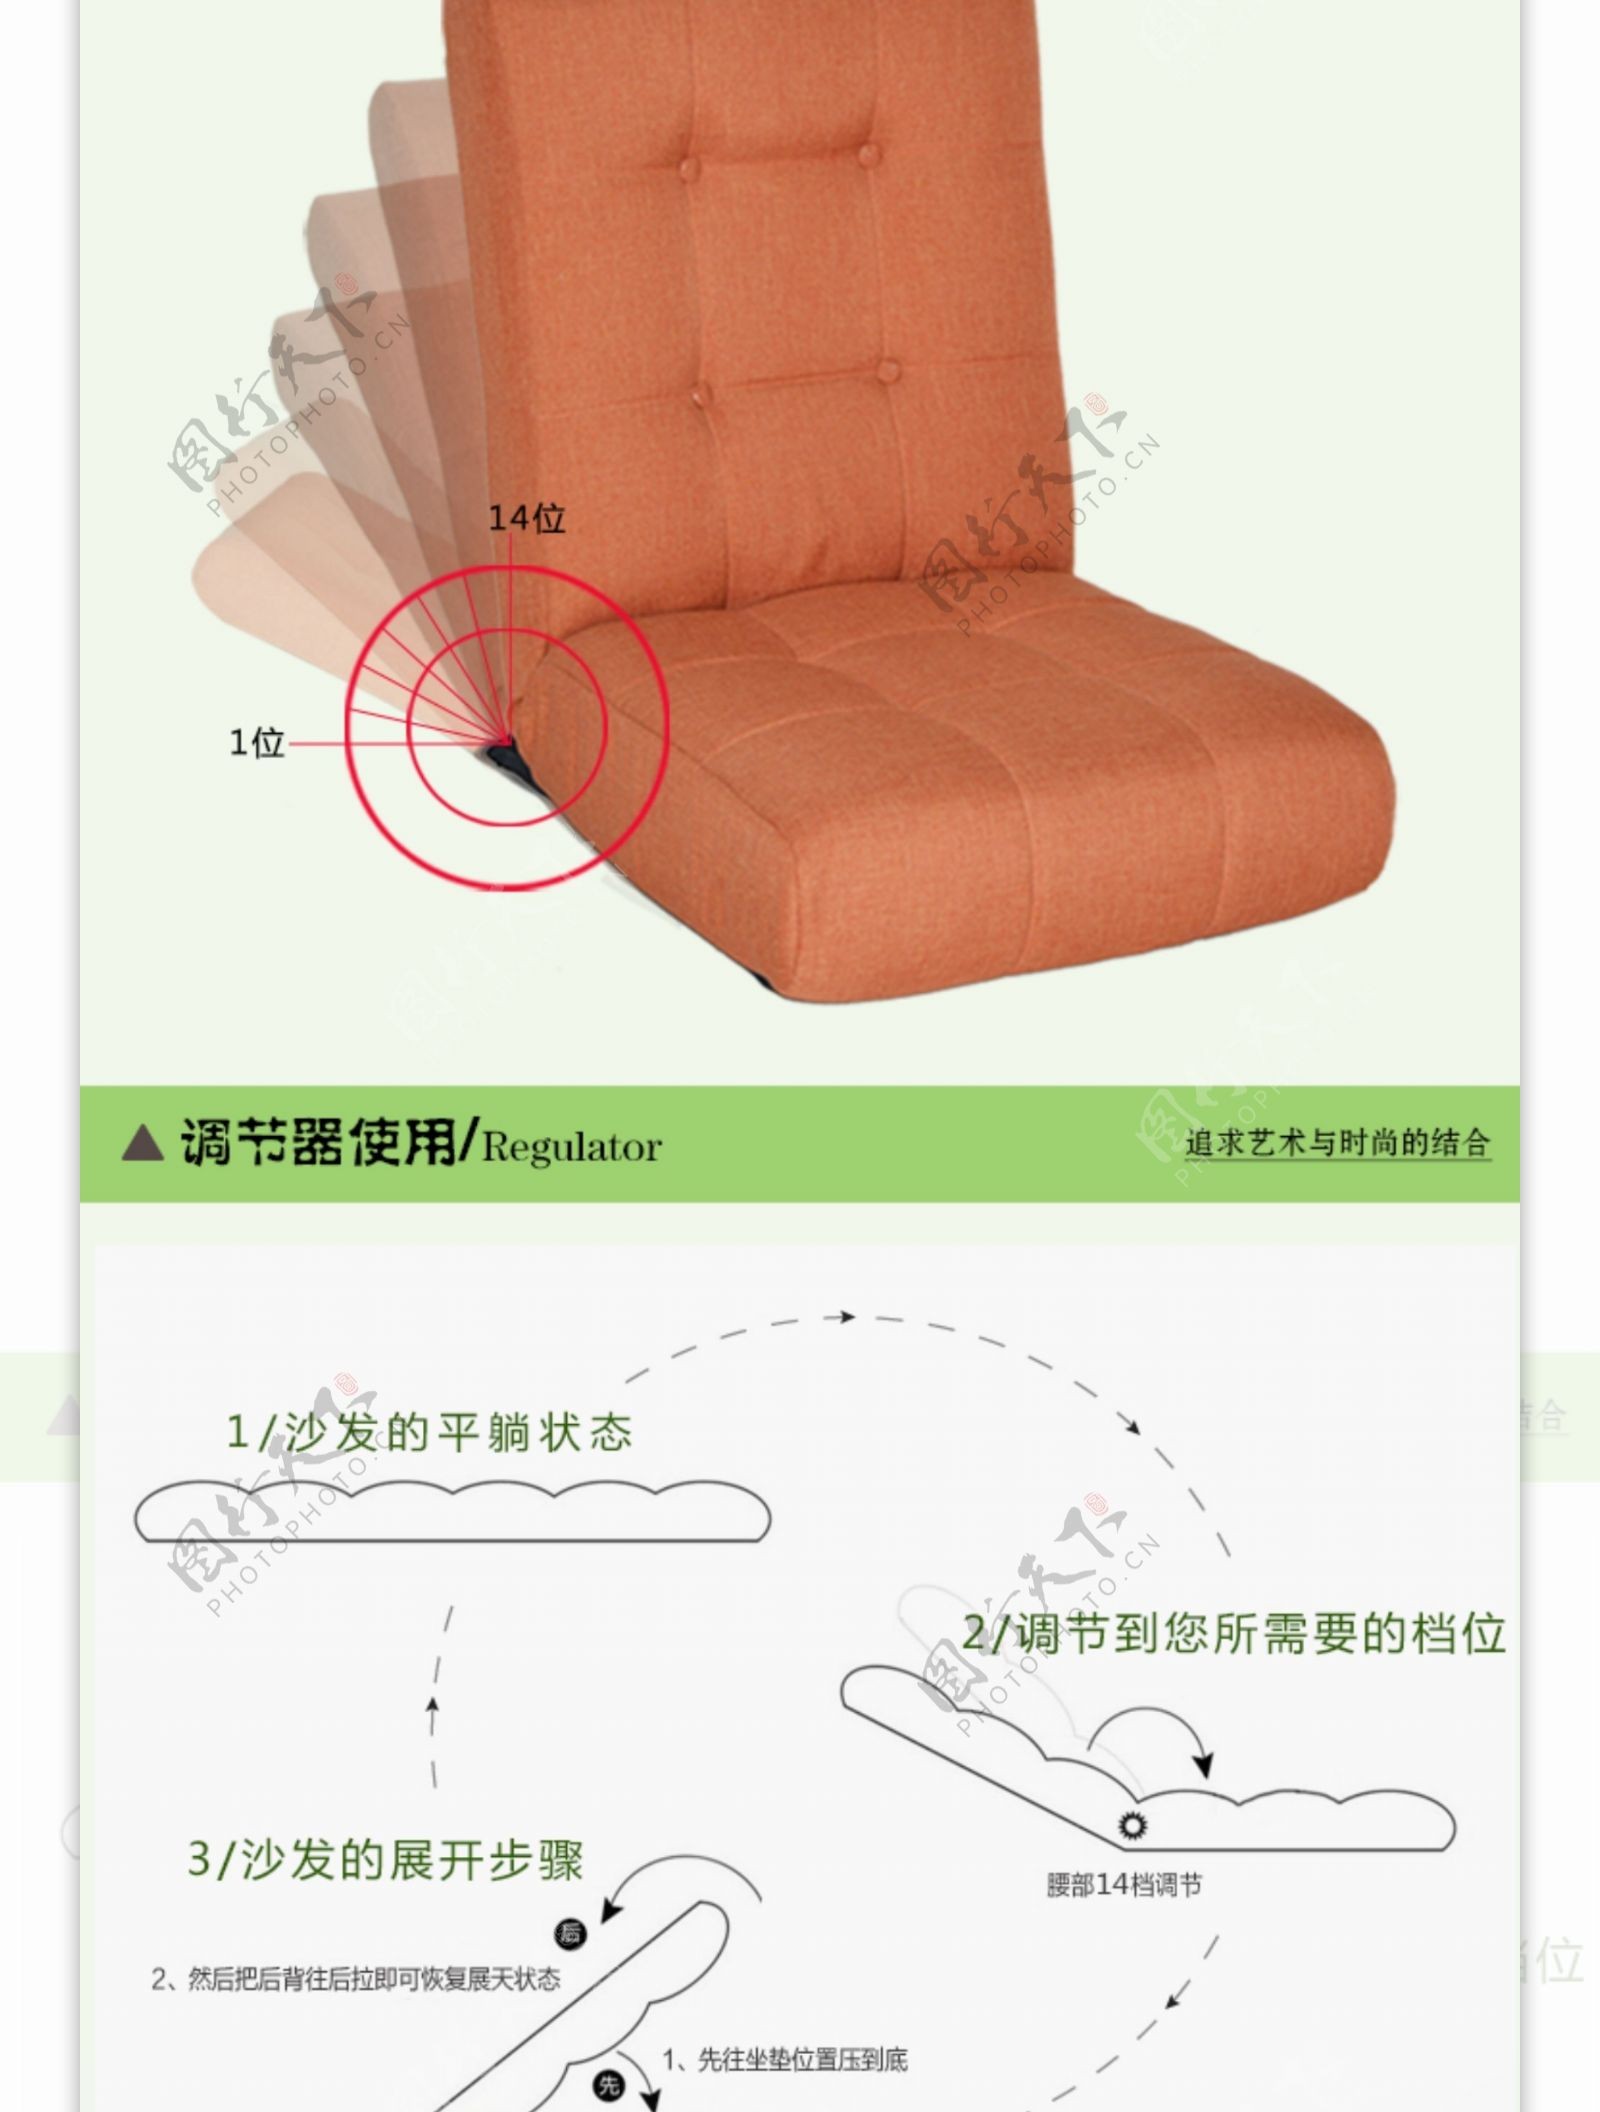 多功能折叠沙发详情页设计